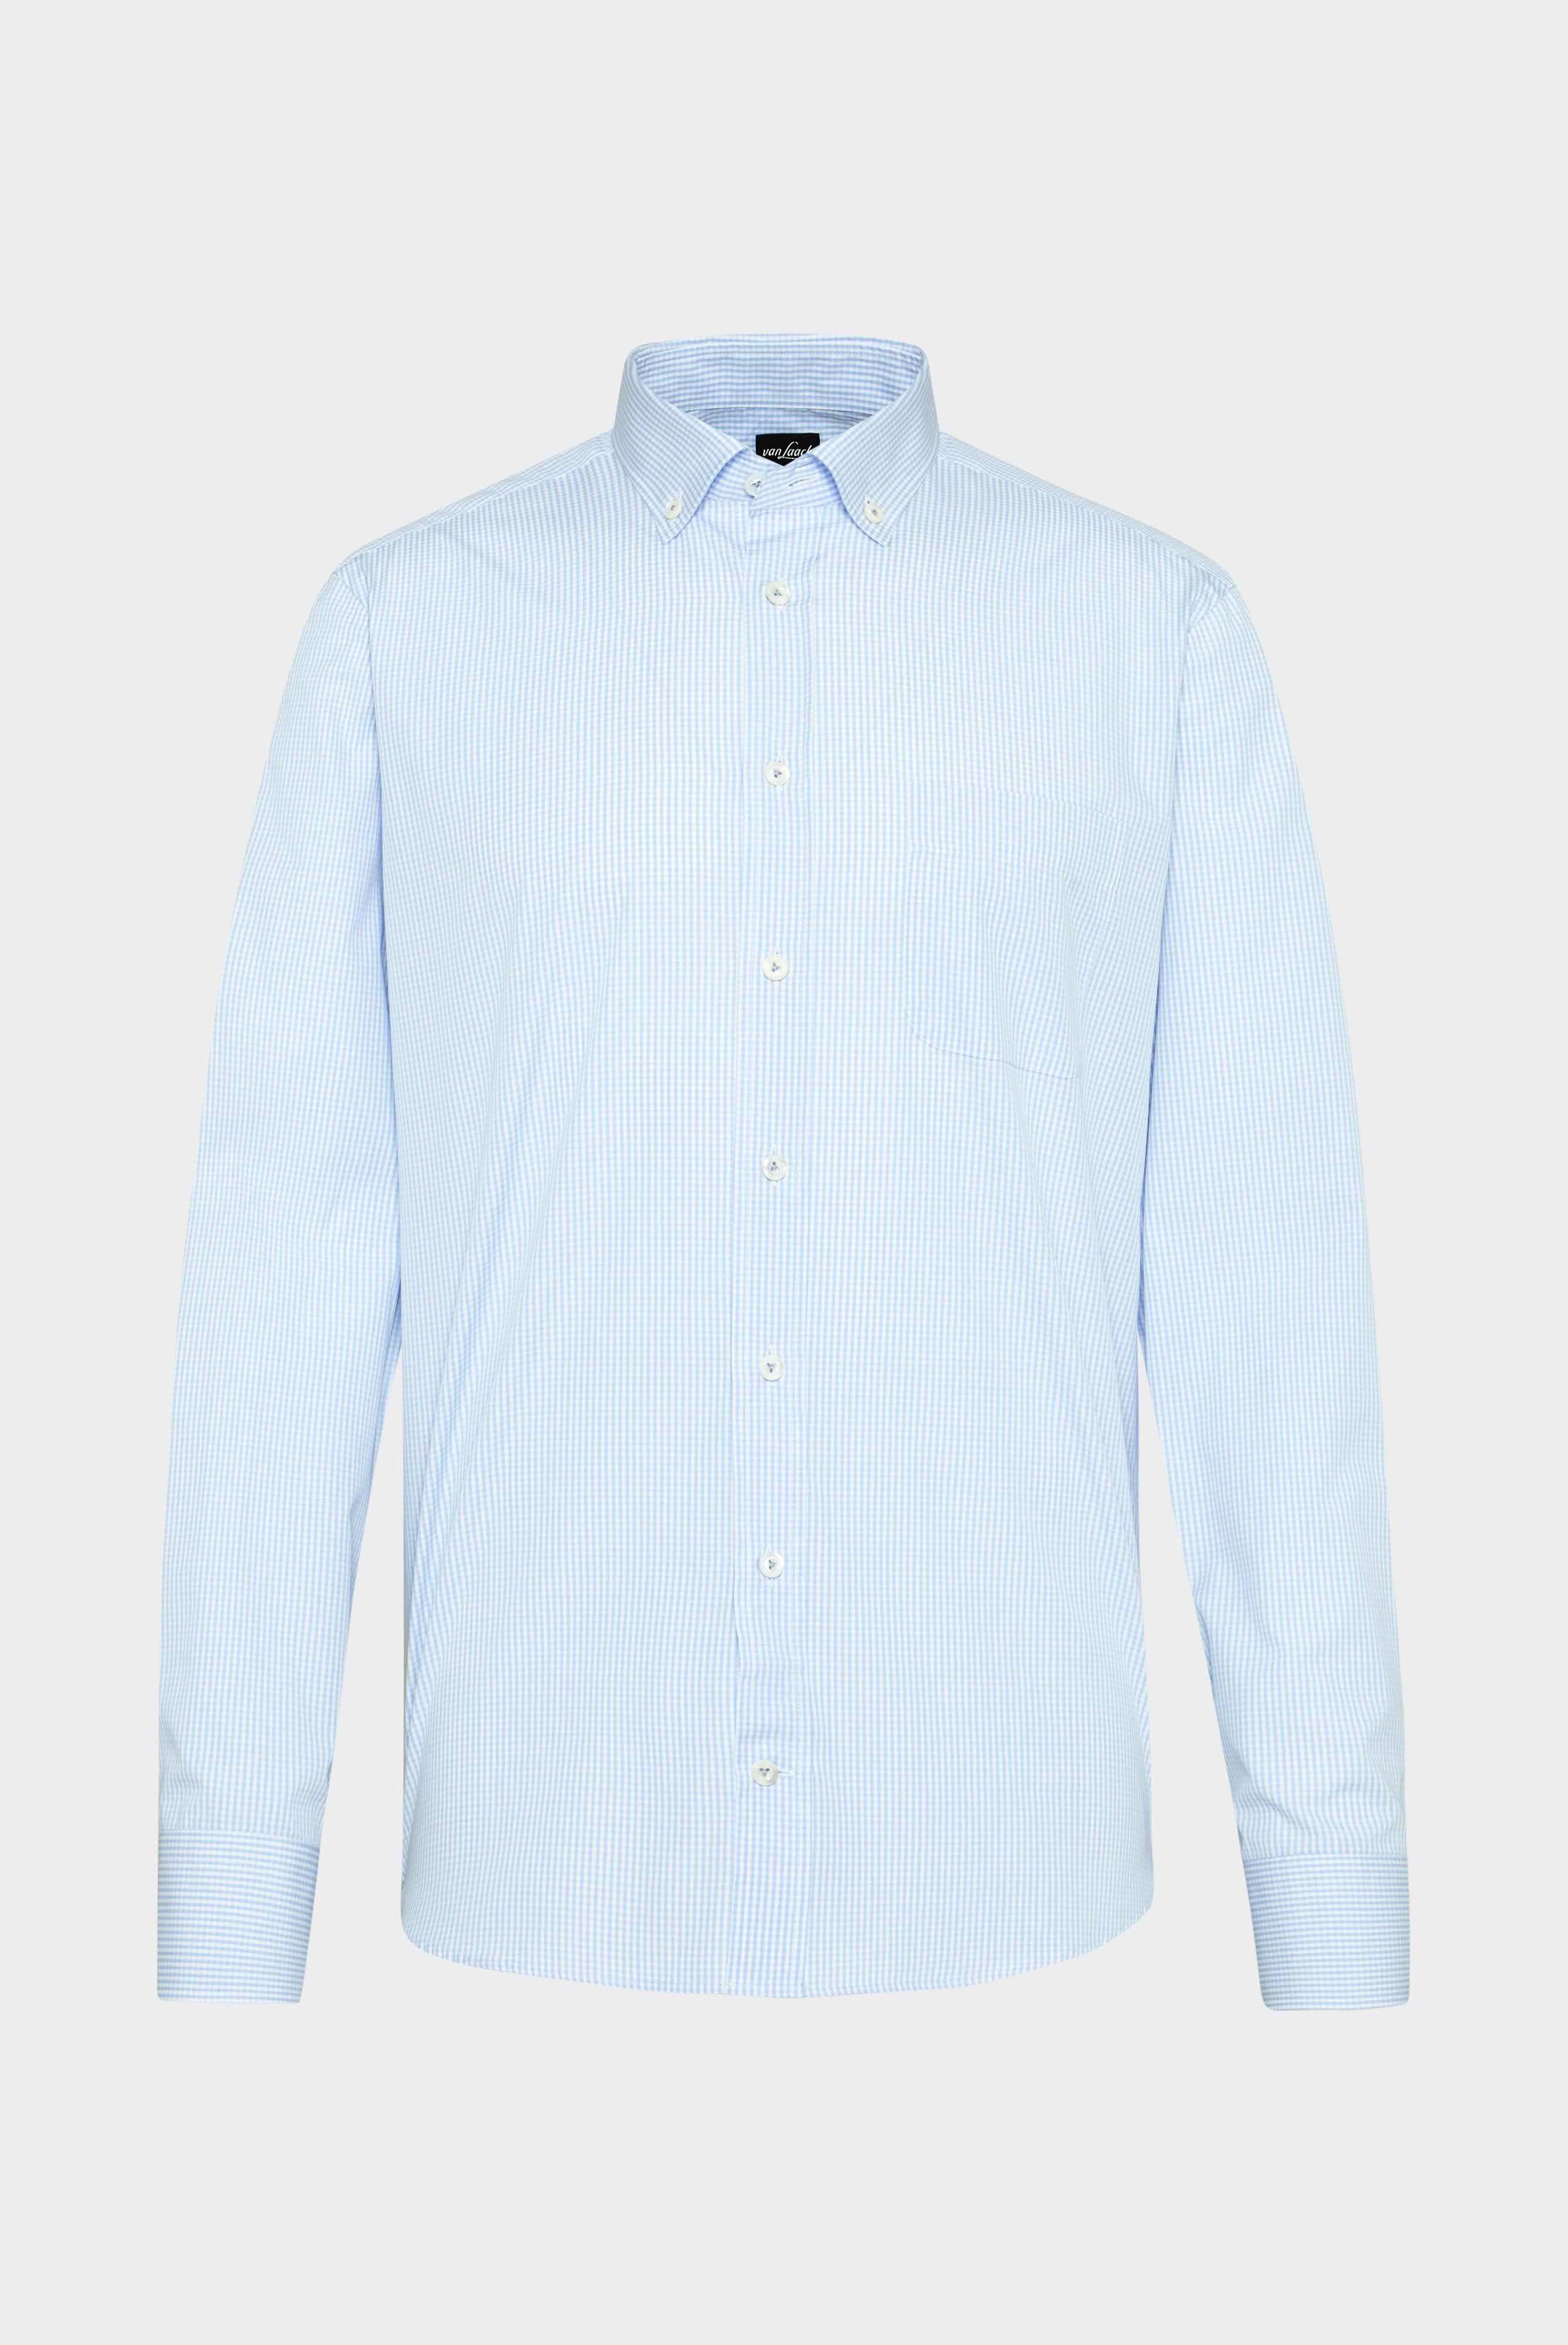 Bügelleichte Hemden+Bügelfreies Karohemd mit Button-Down-Kragen+20.2013.AV.141787.720.37